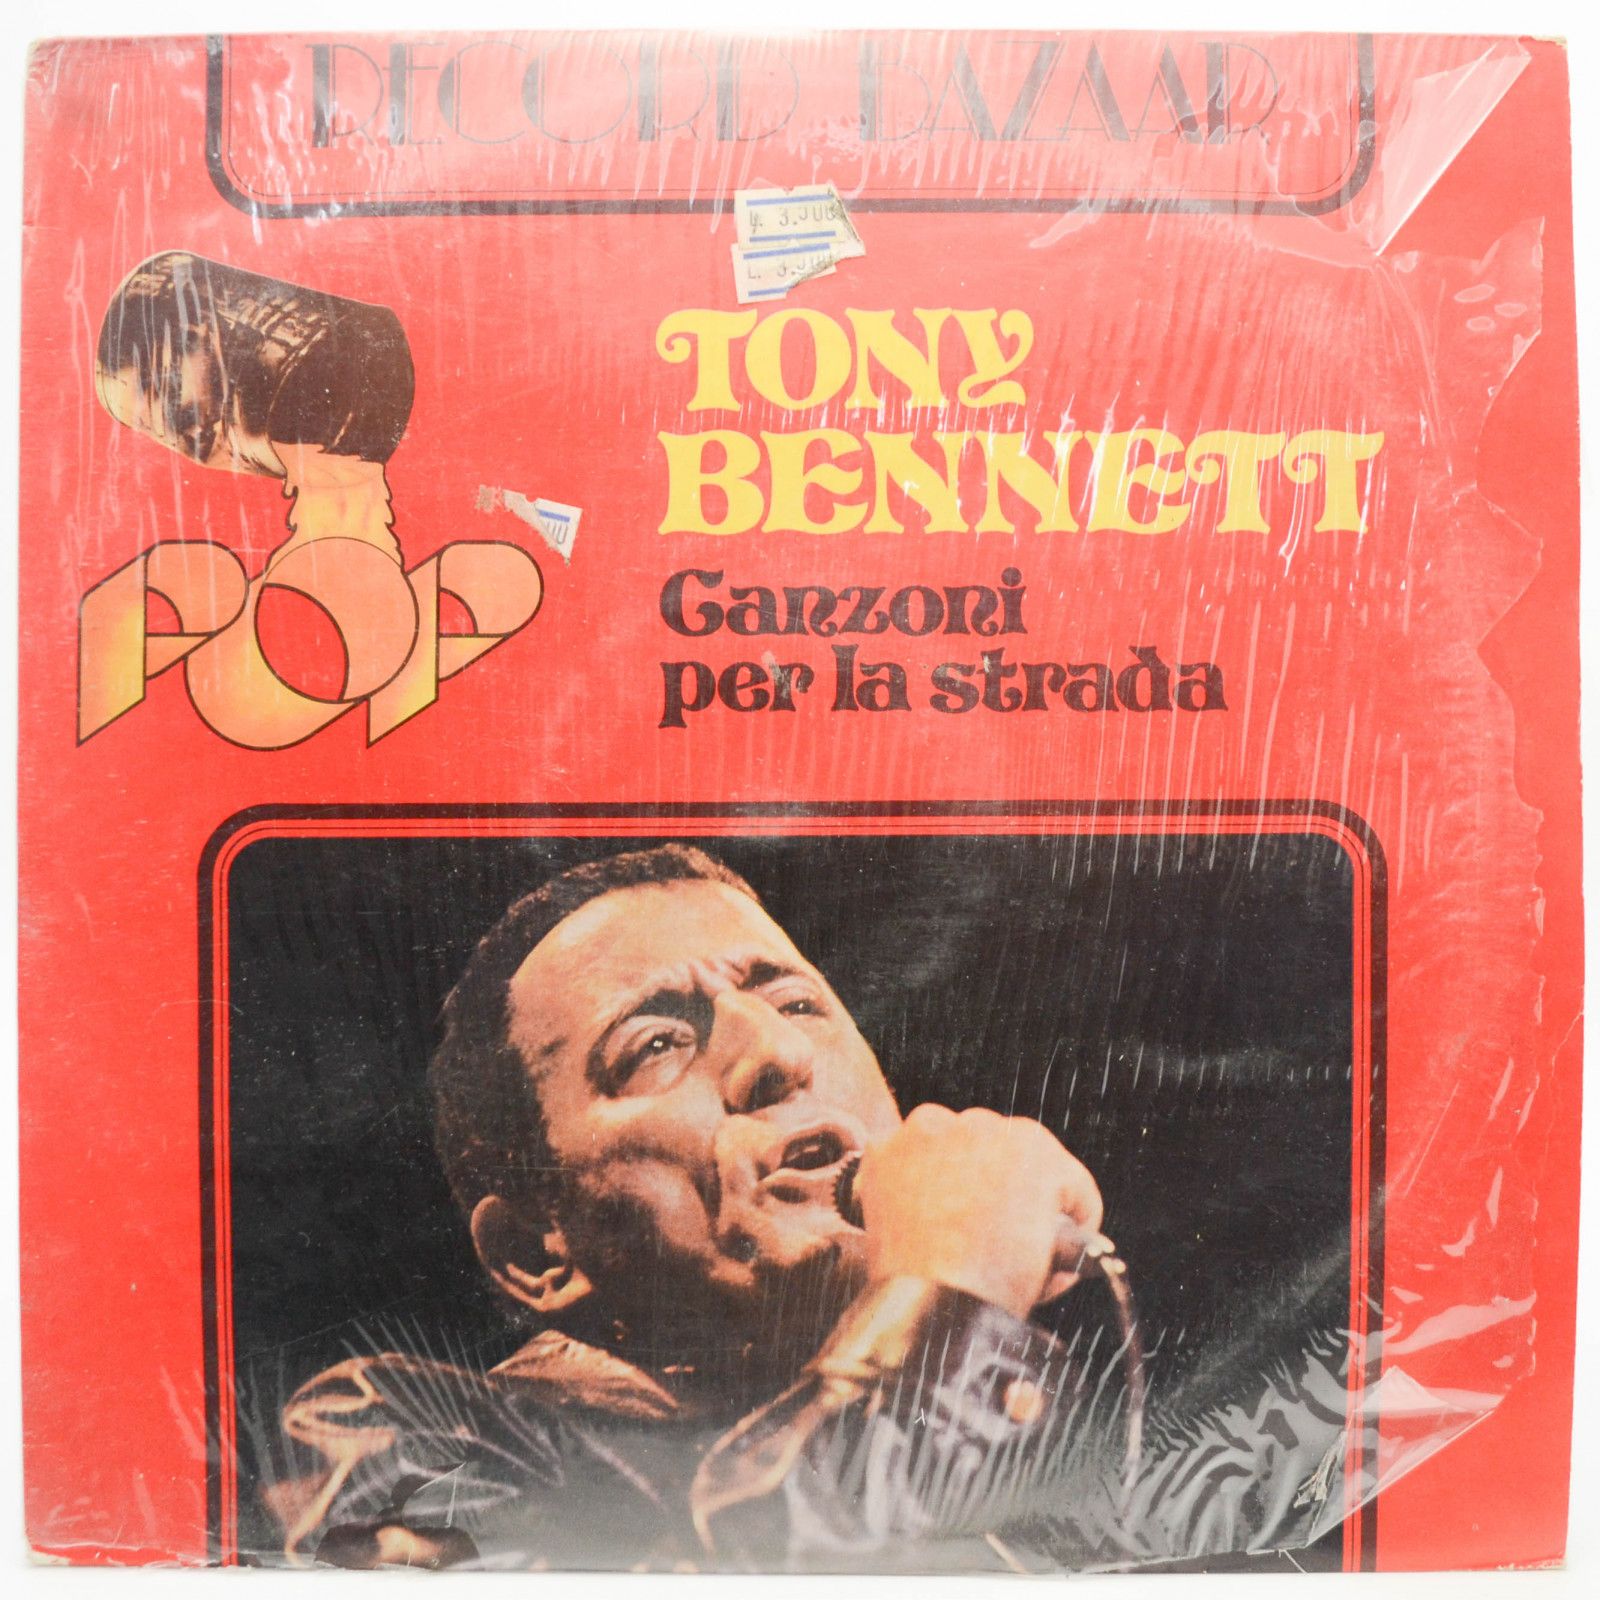 Tony Bennett — Canzoni Per La Strada, 1976